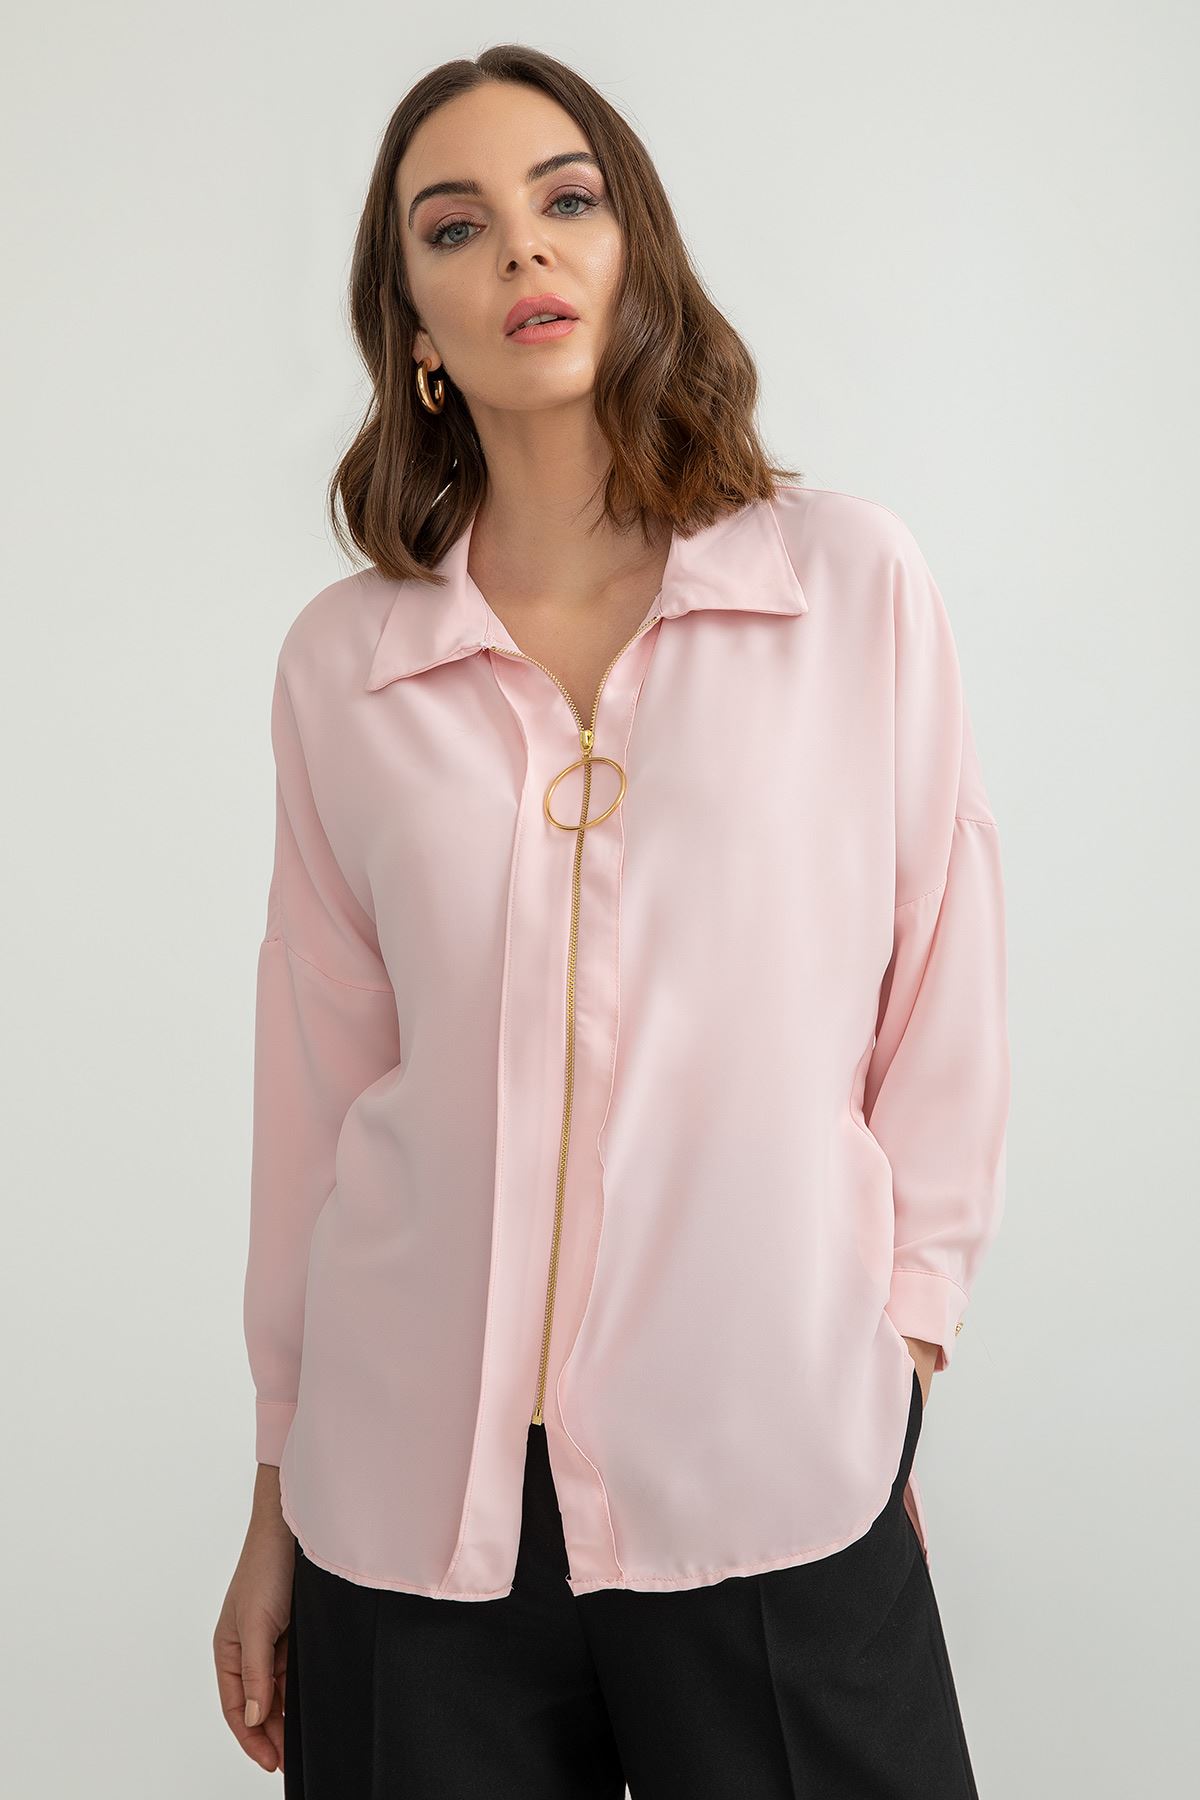 Jesica Fabric Long Sleeve Hip Height Wide Zip Front Women'S Shirt - Light Pink